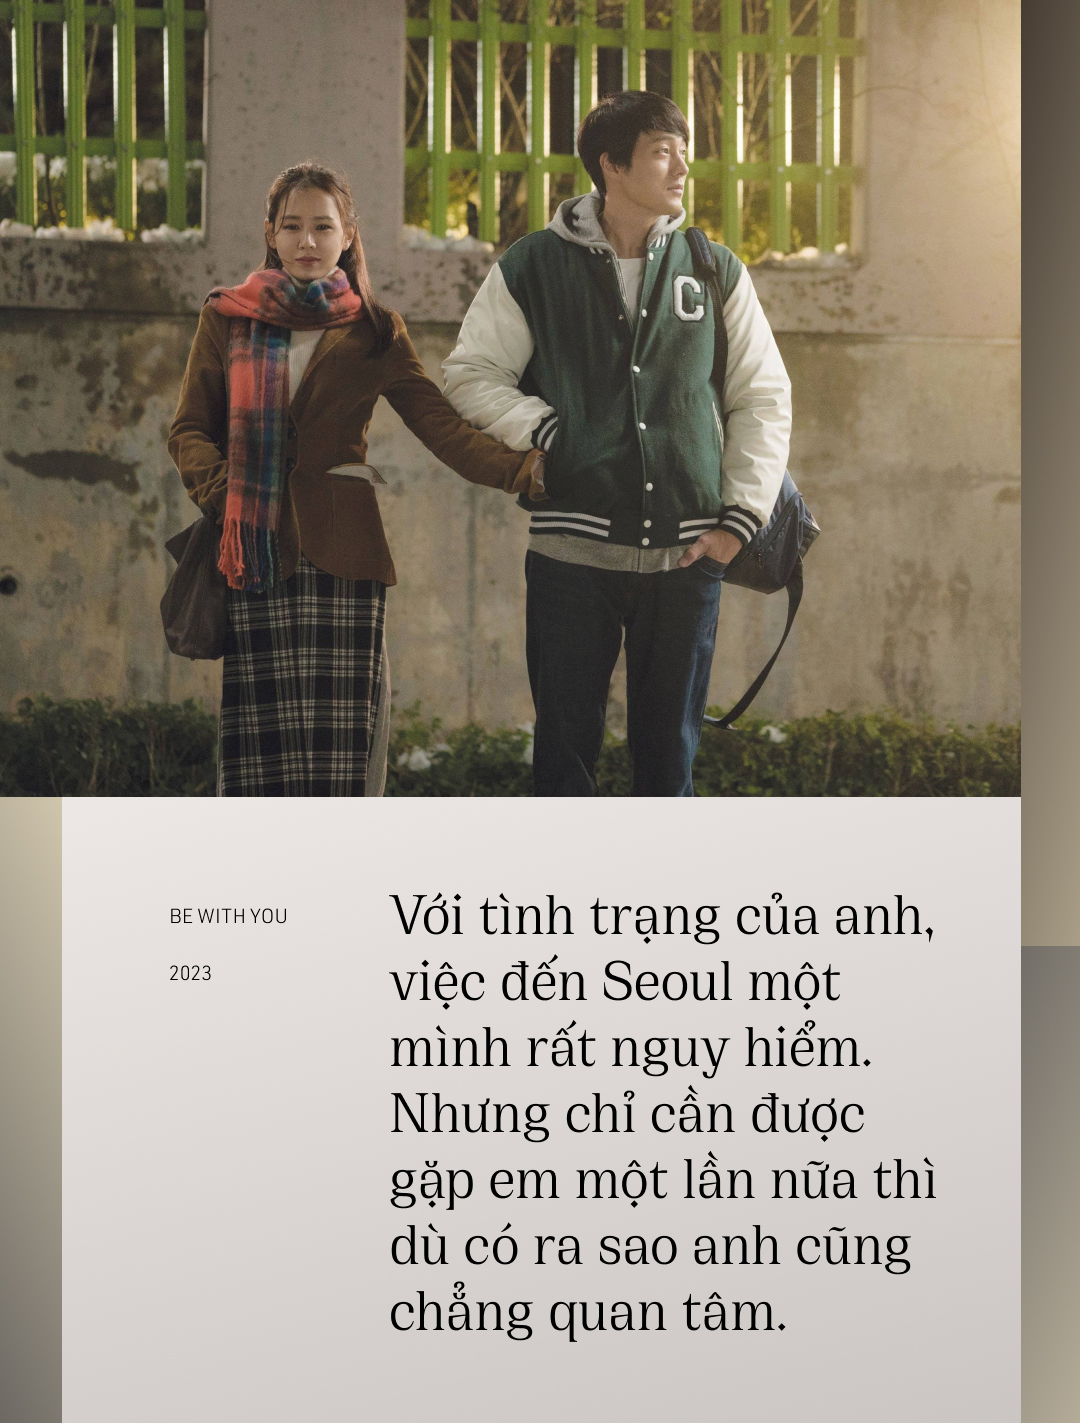 Nghẹn ngào với 7 câu thoại trong bộ phim hay bậc nhất sự nghiệp của Son Ye Jin - Ảnh 6.